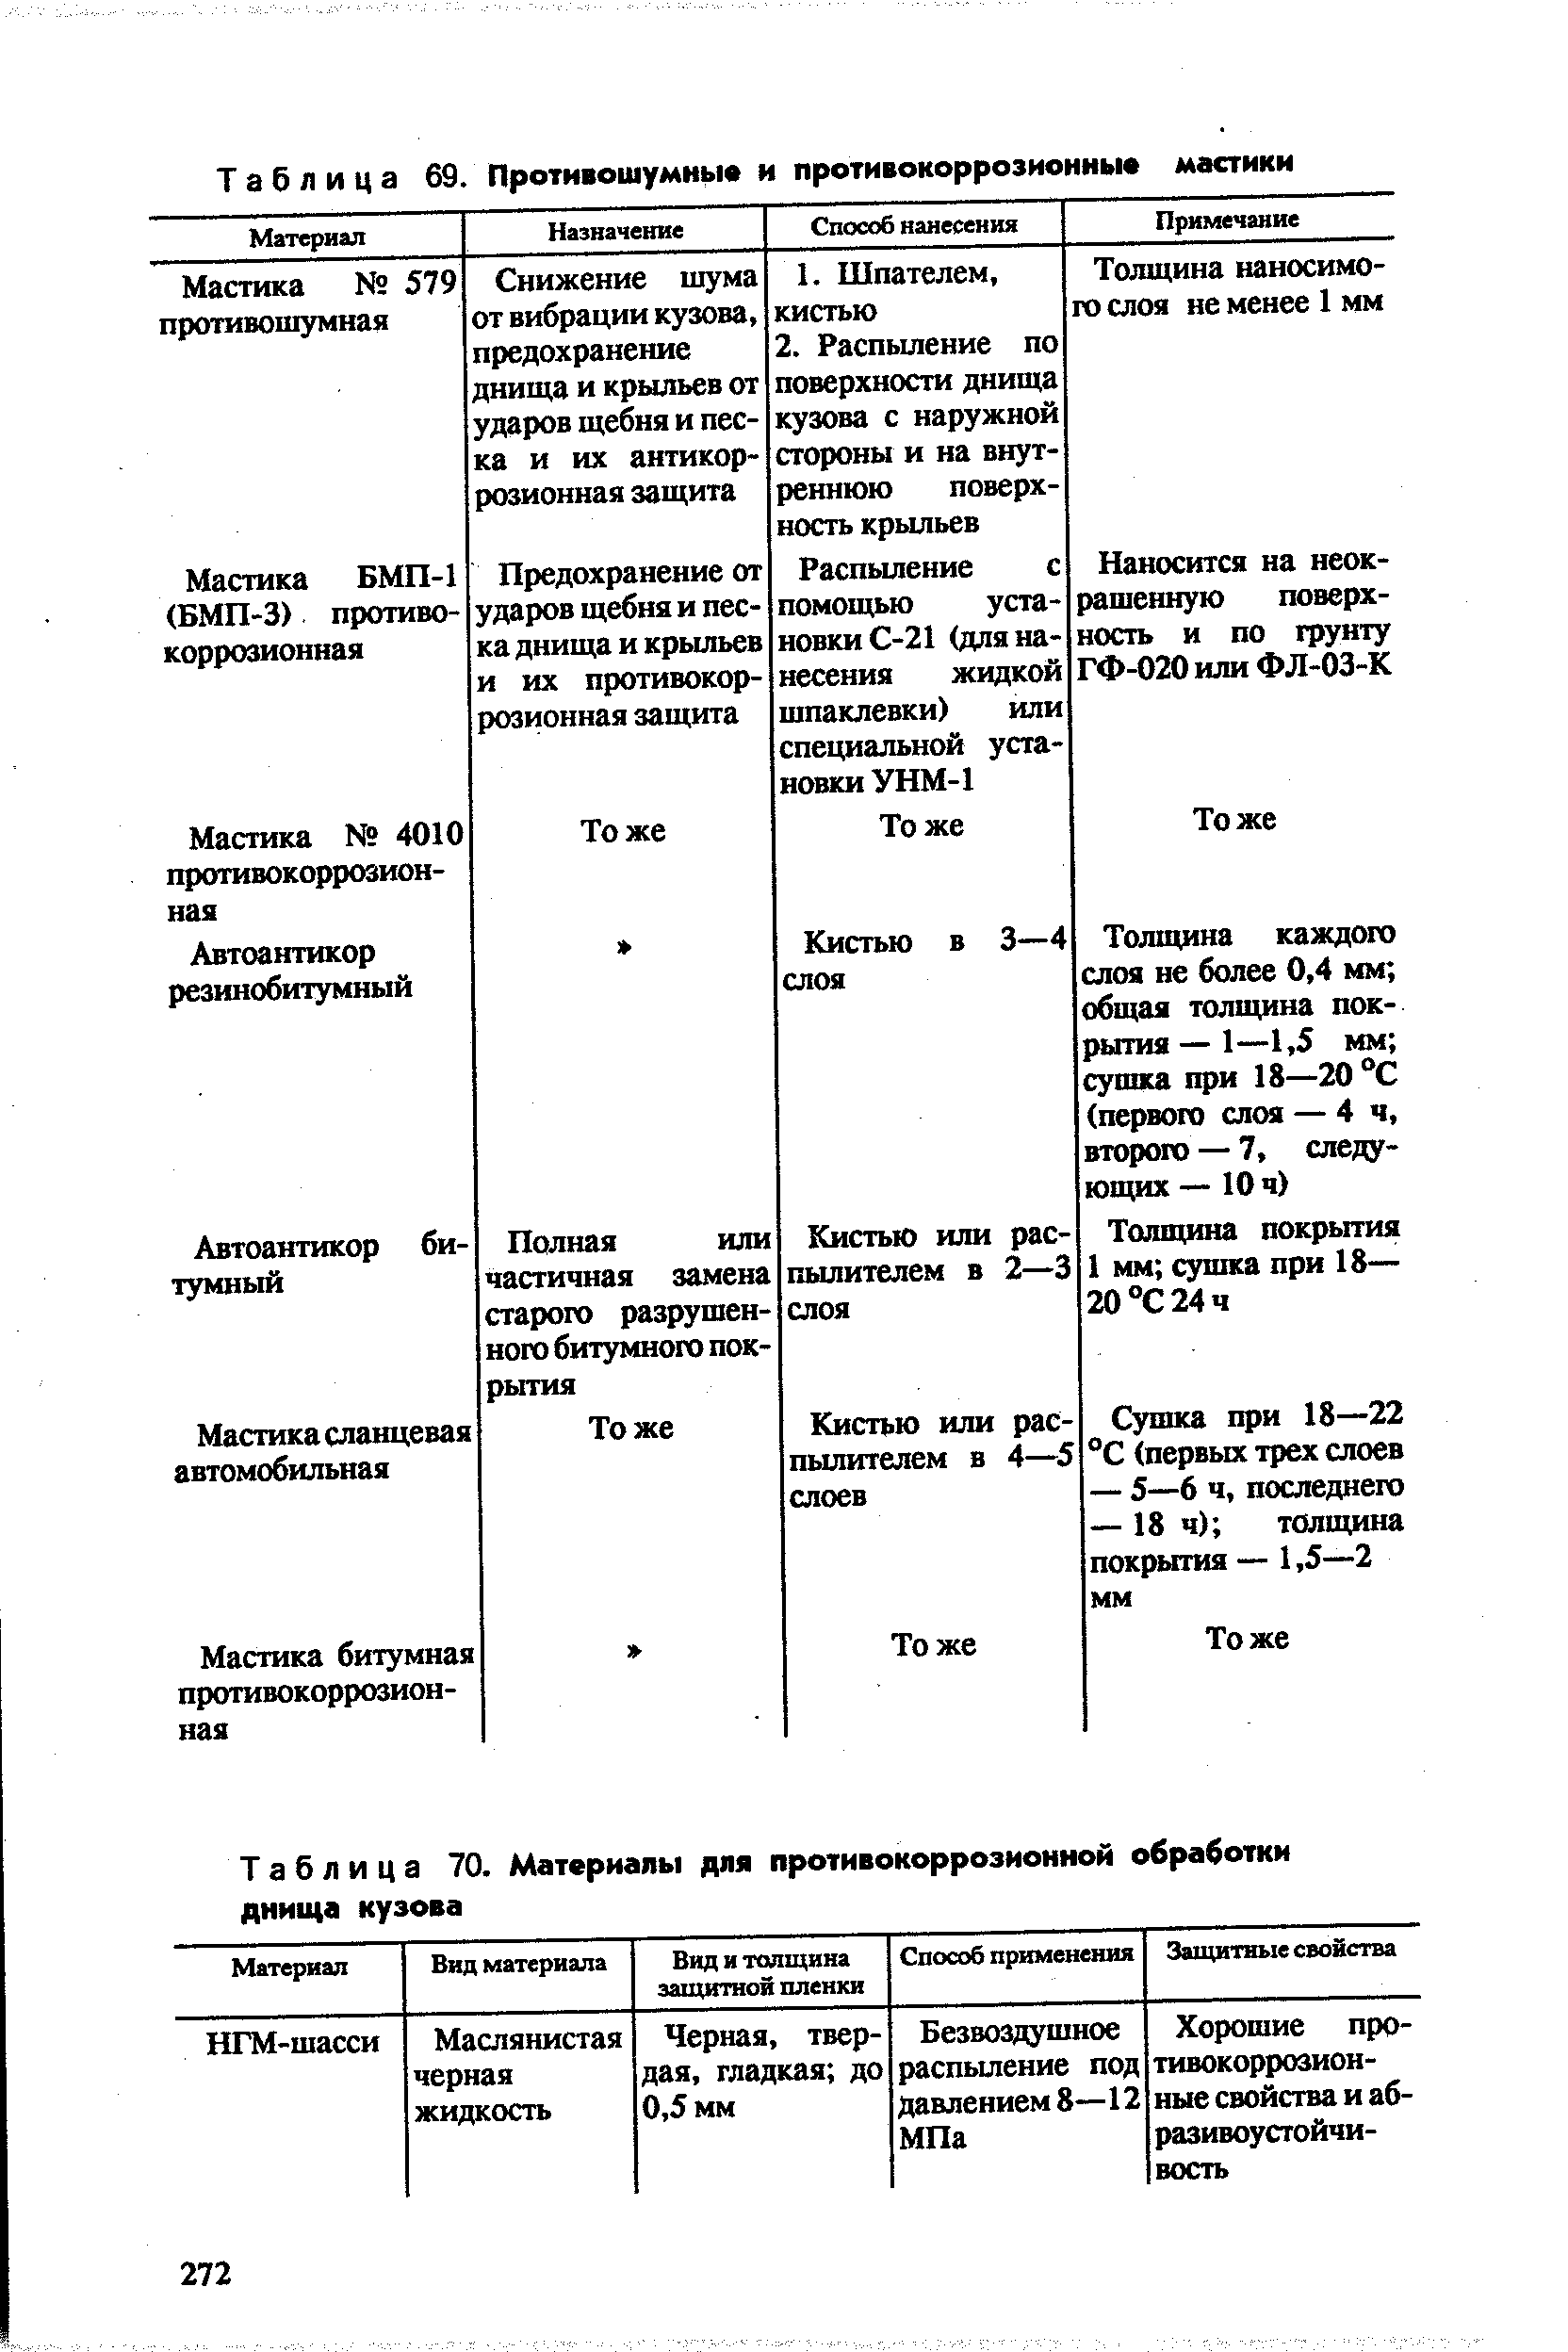 Таблица 70. Материалы для противокоррозионной обработки днища кузова
